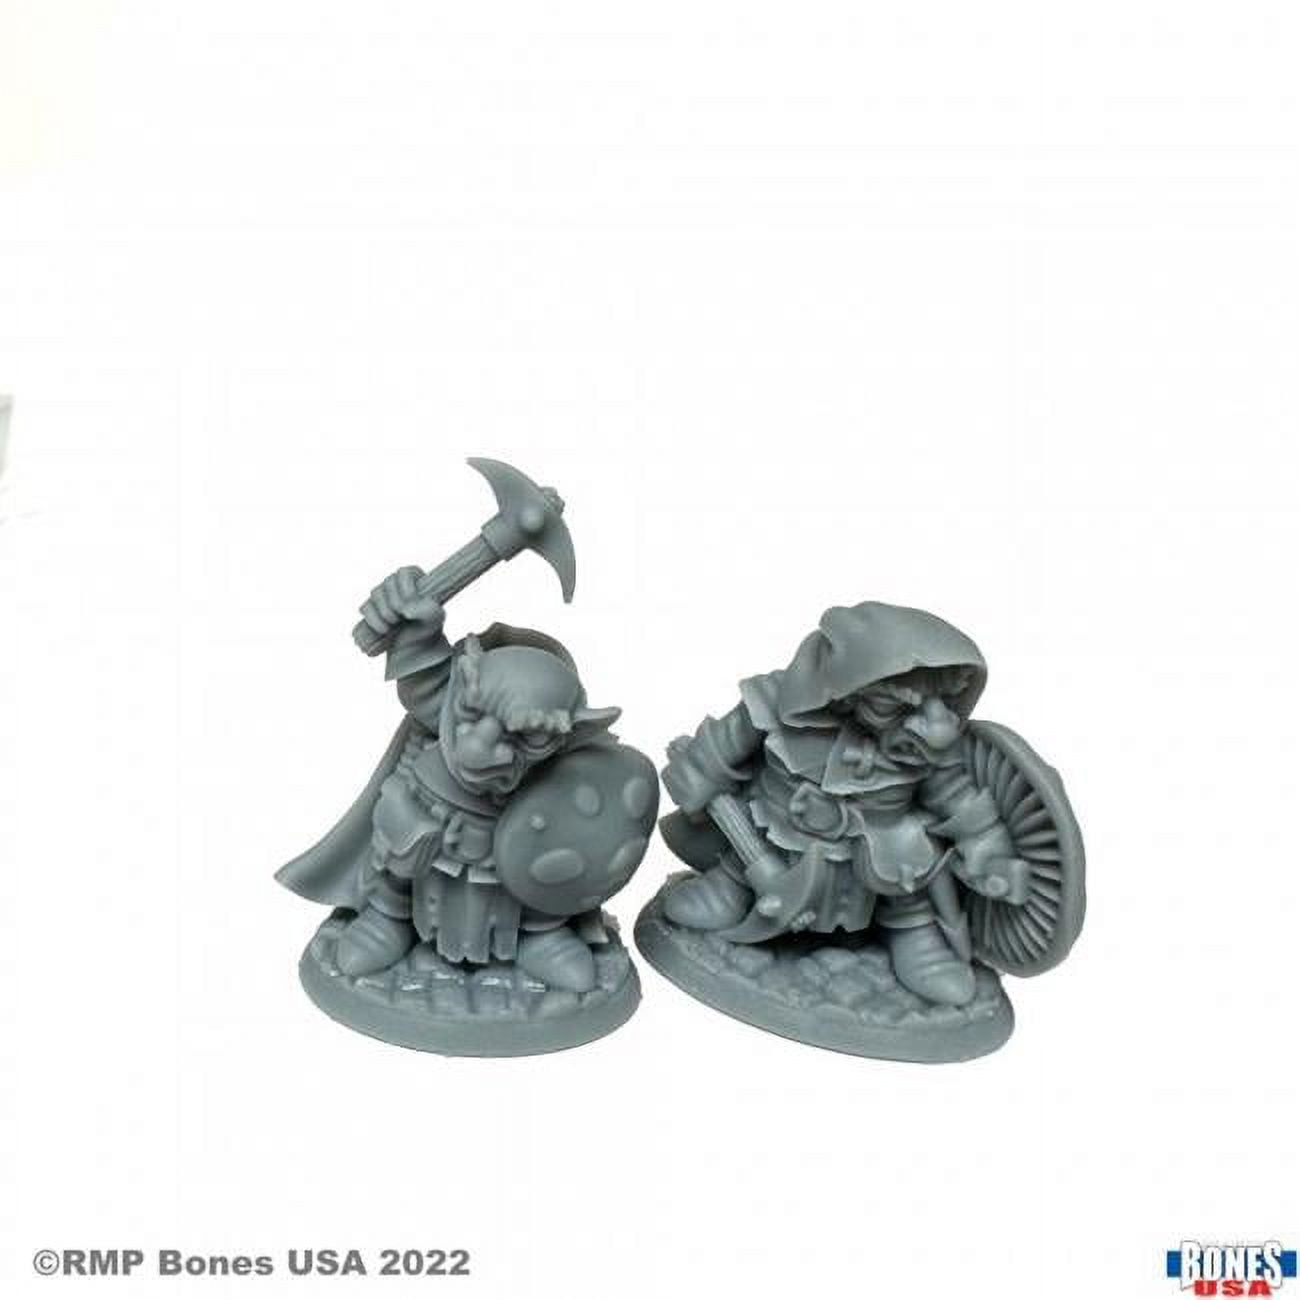 Picture of Reaper Miniatures REM30109 Bones Black - Deep Gnome Rangers Miniatures - 2 Piece